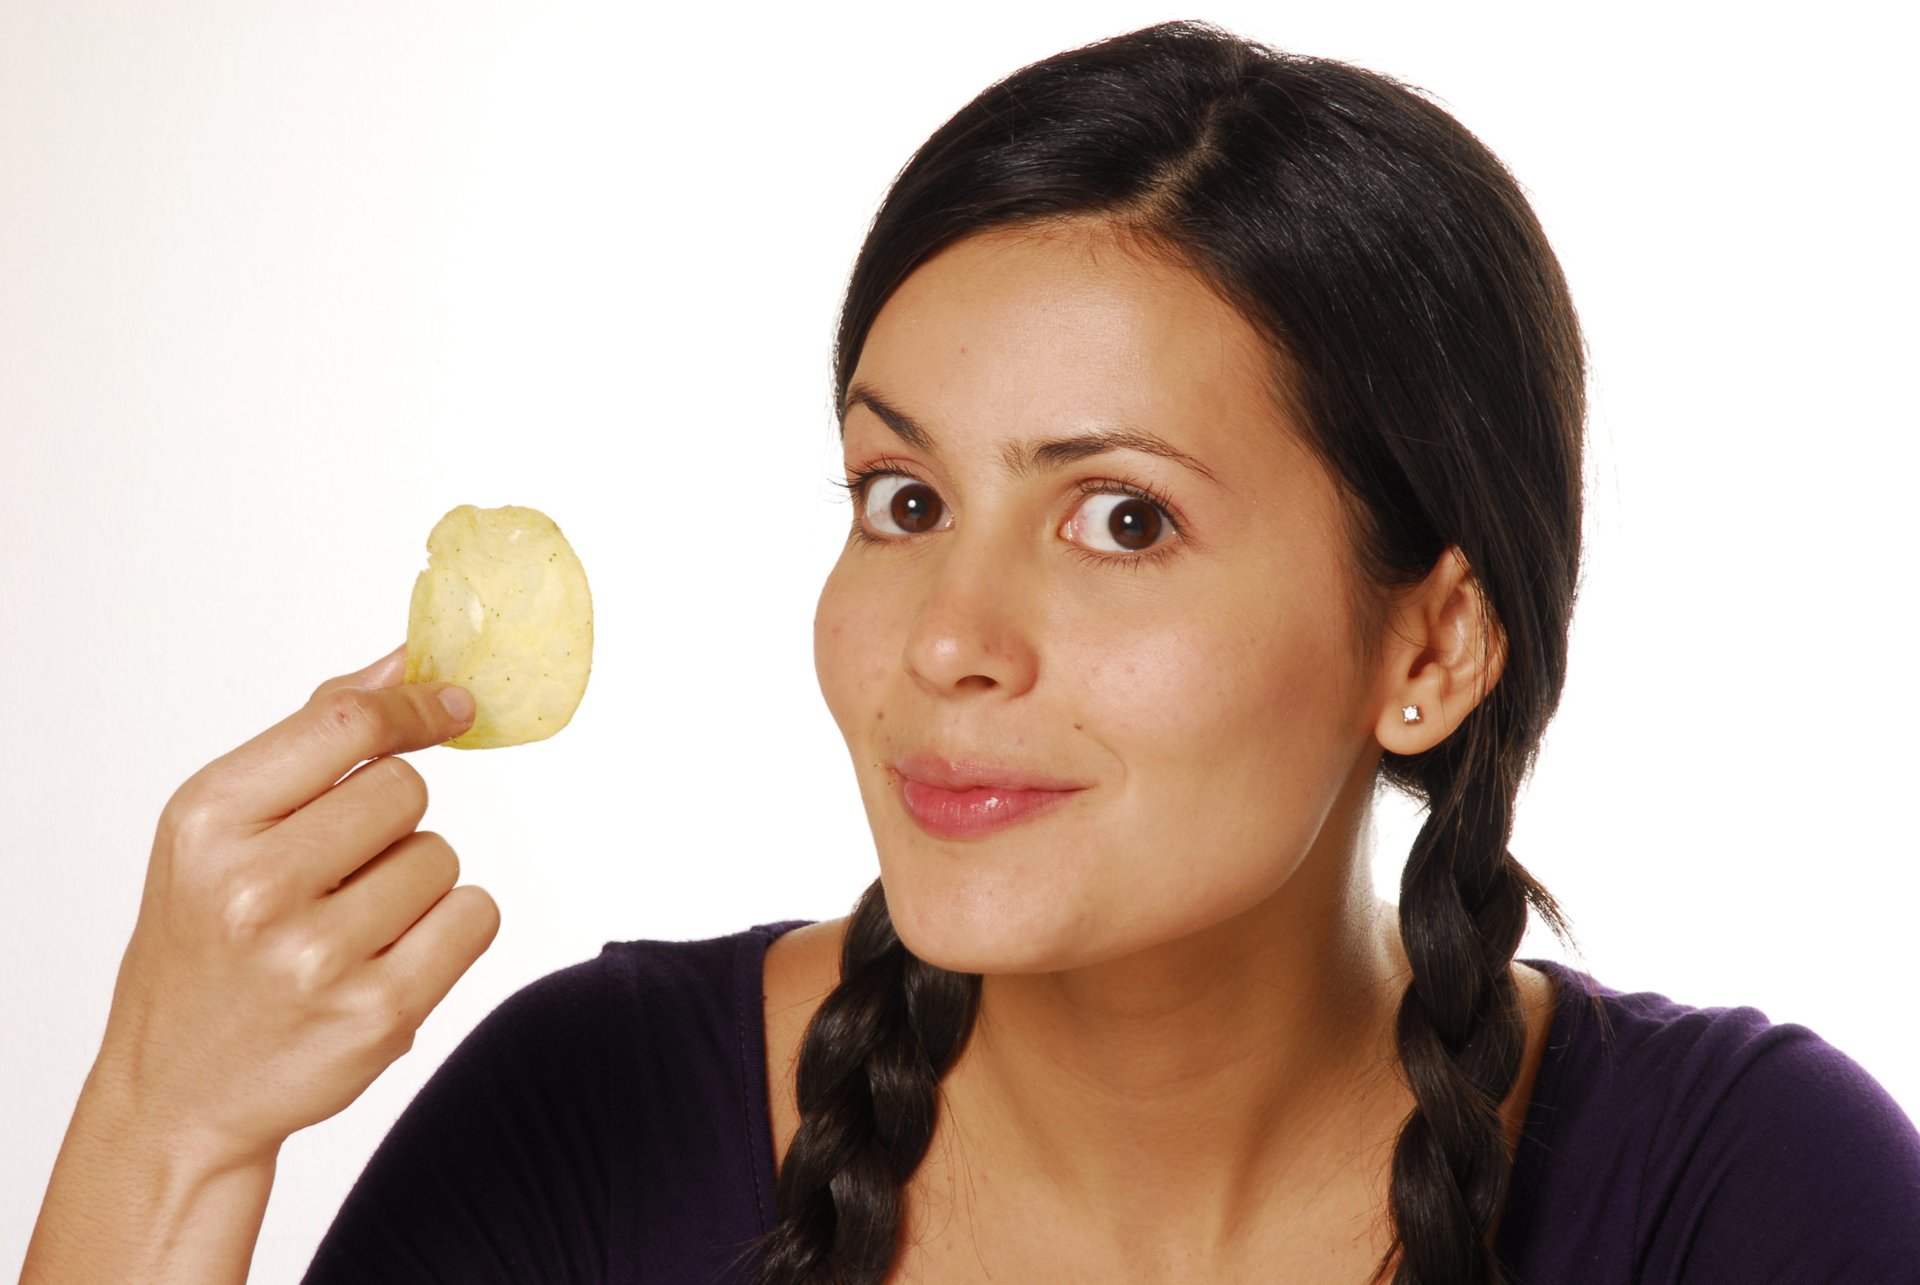 Woman holding a potato chip